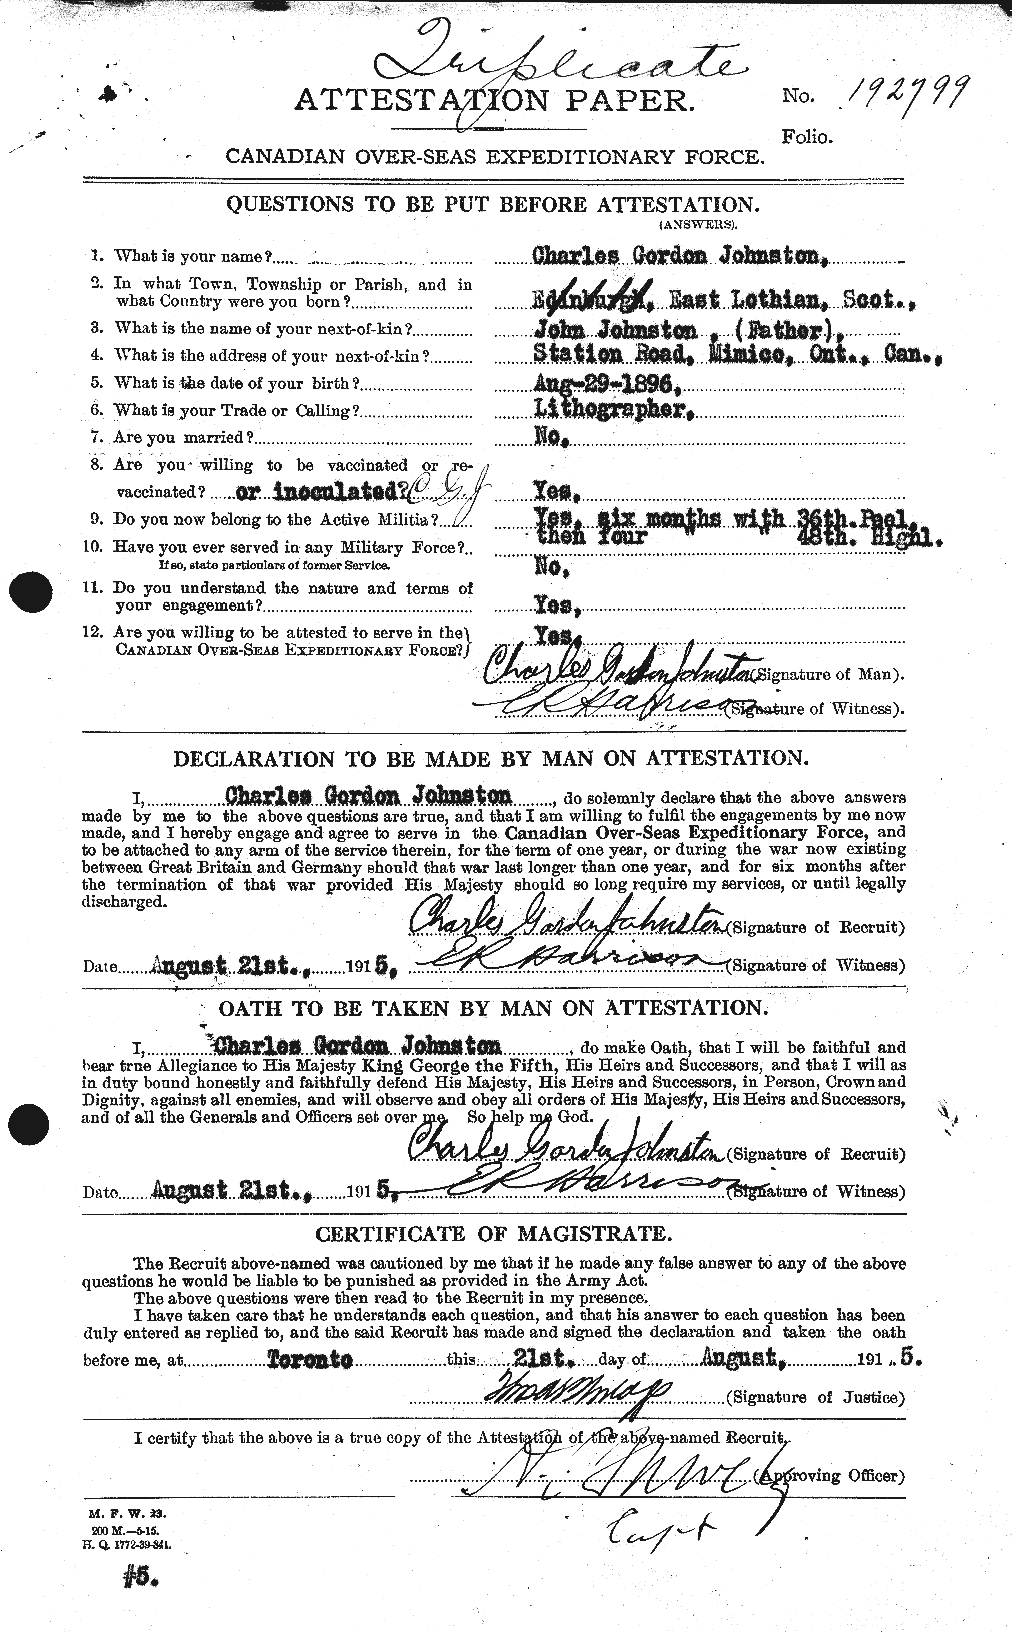 Dossiers du Personnel de la Première Guerre mondiale - CEC 423106a